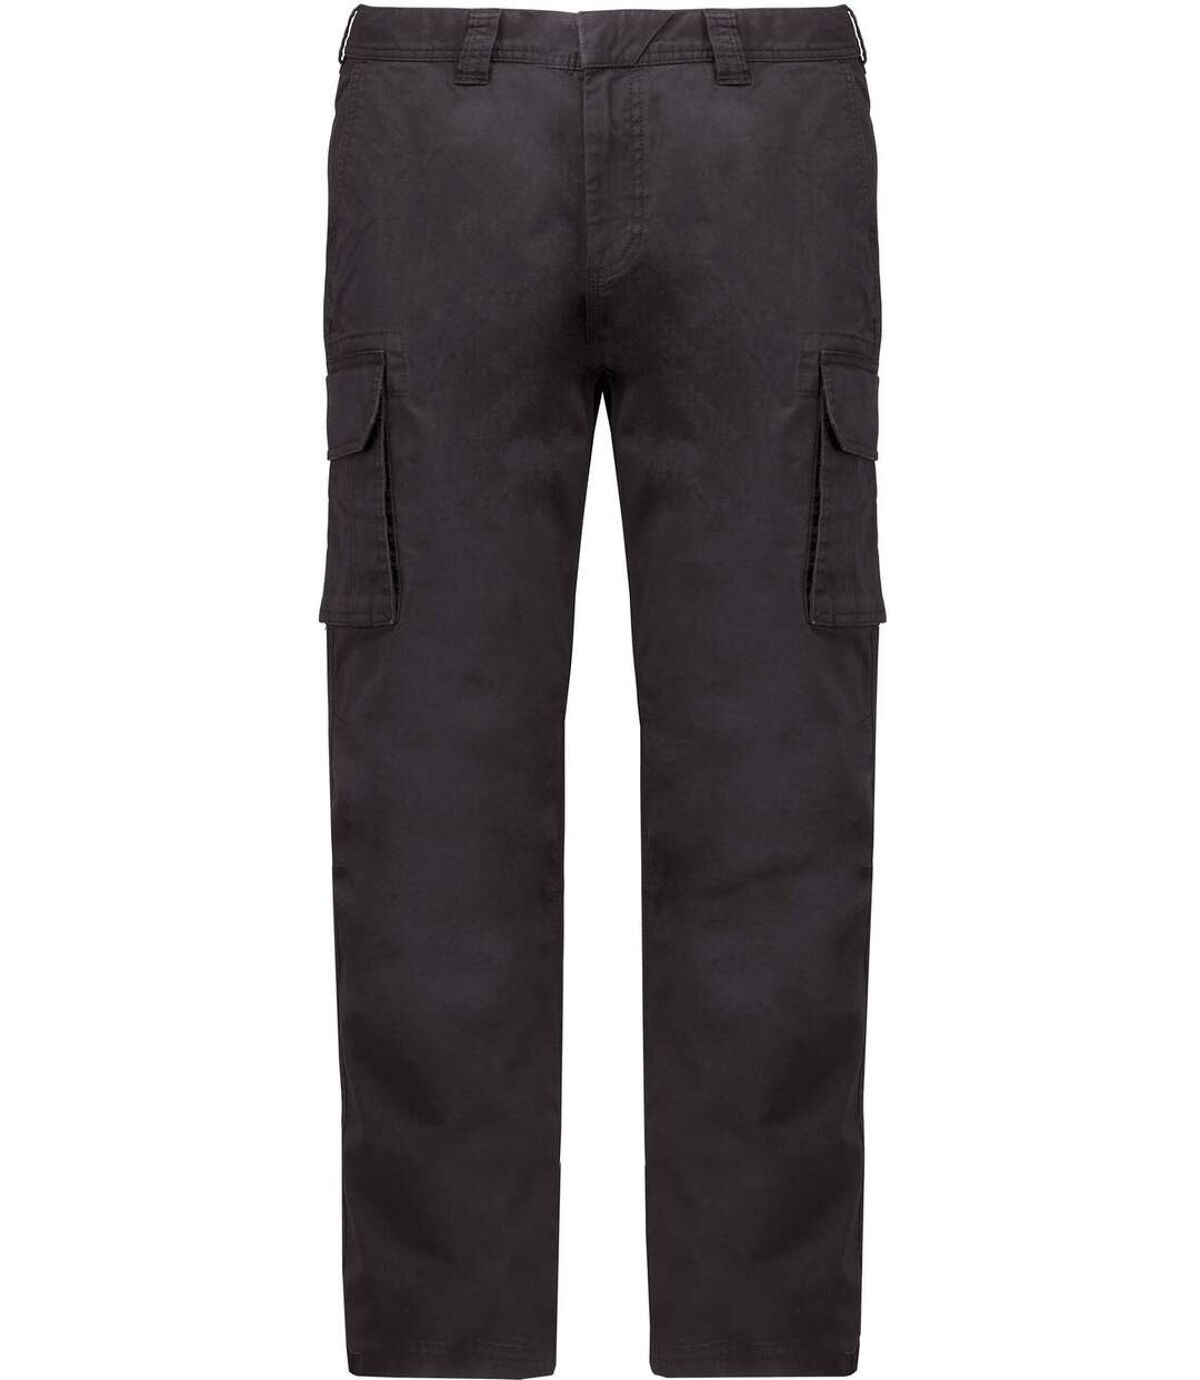 Pantalon multipoches pour homme - K744 - gris foncé